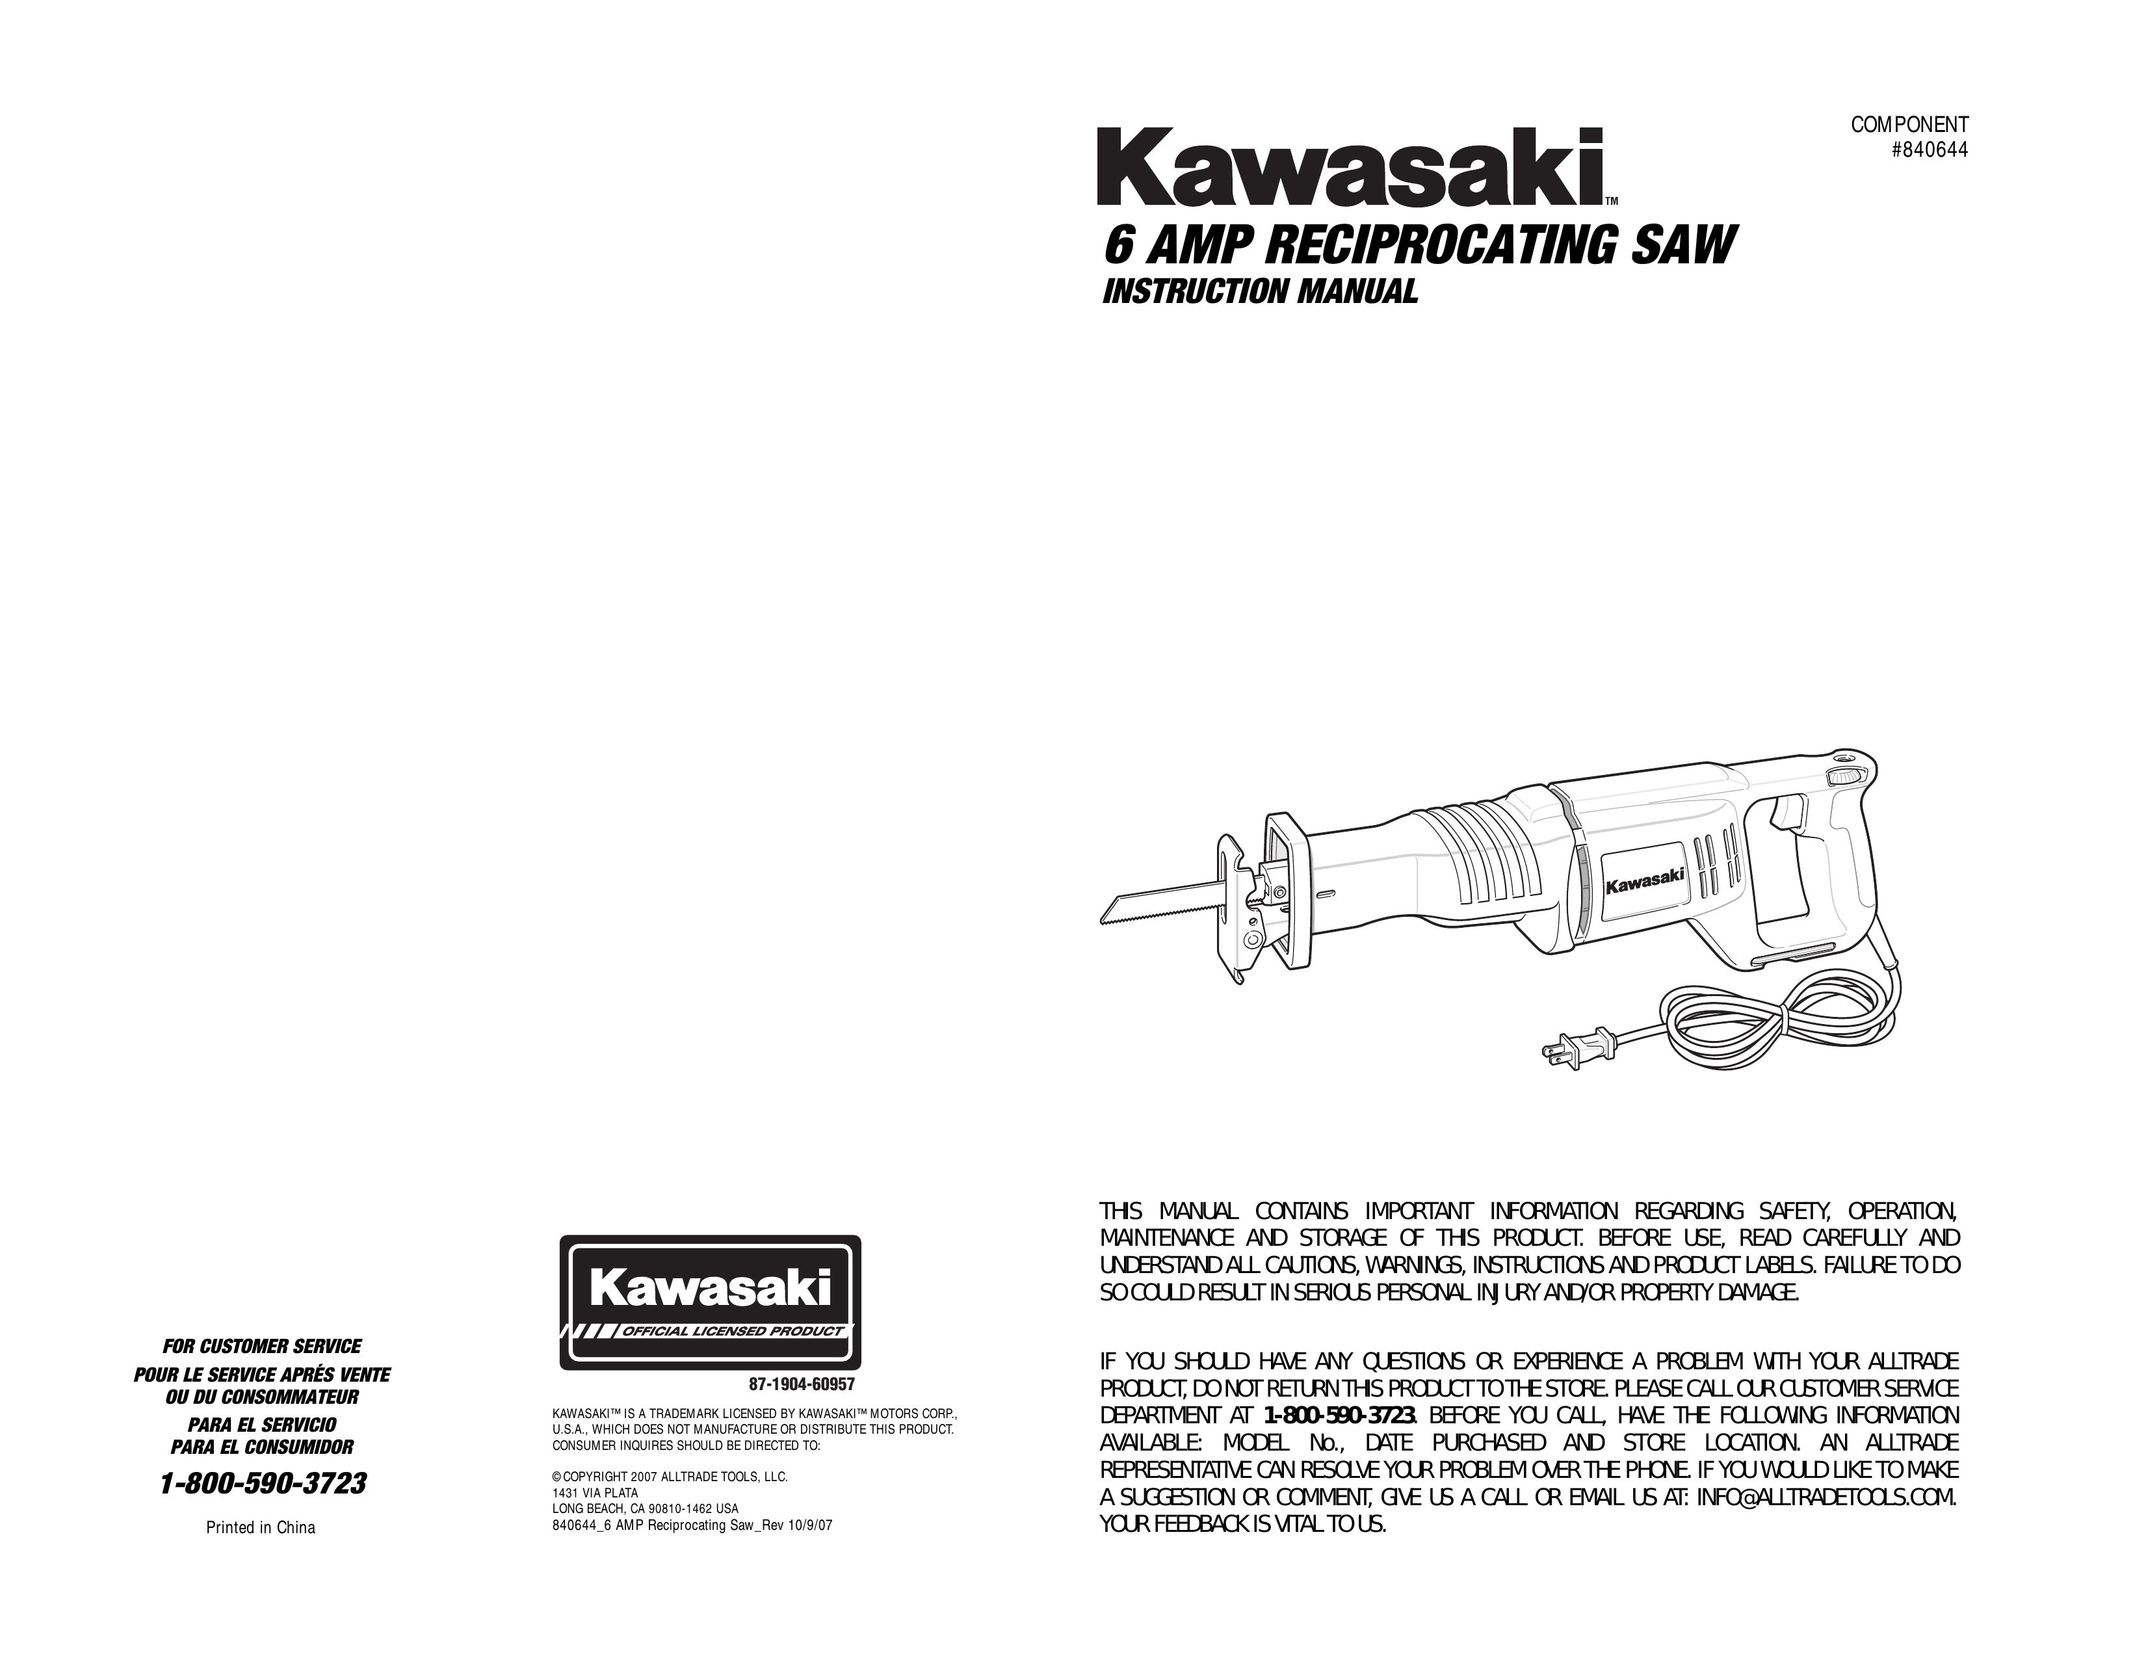 Kawasaki 840844 Cordless Saw User Manual